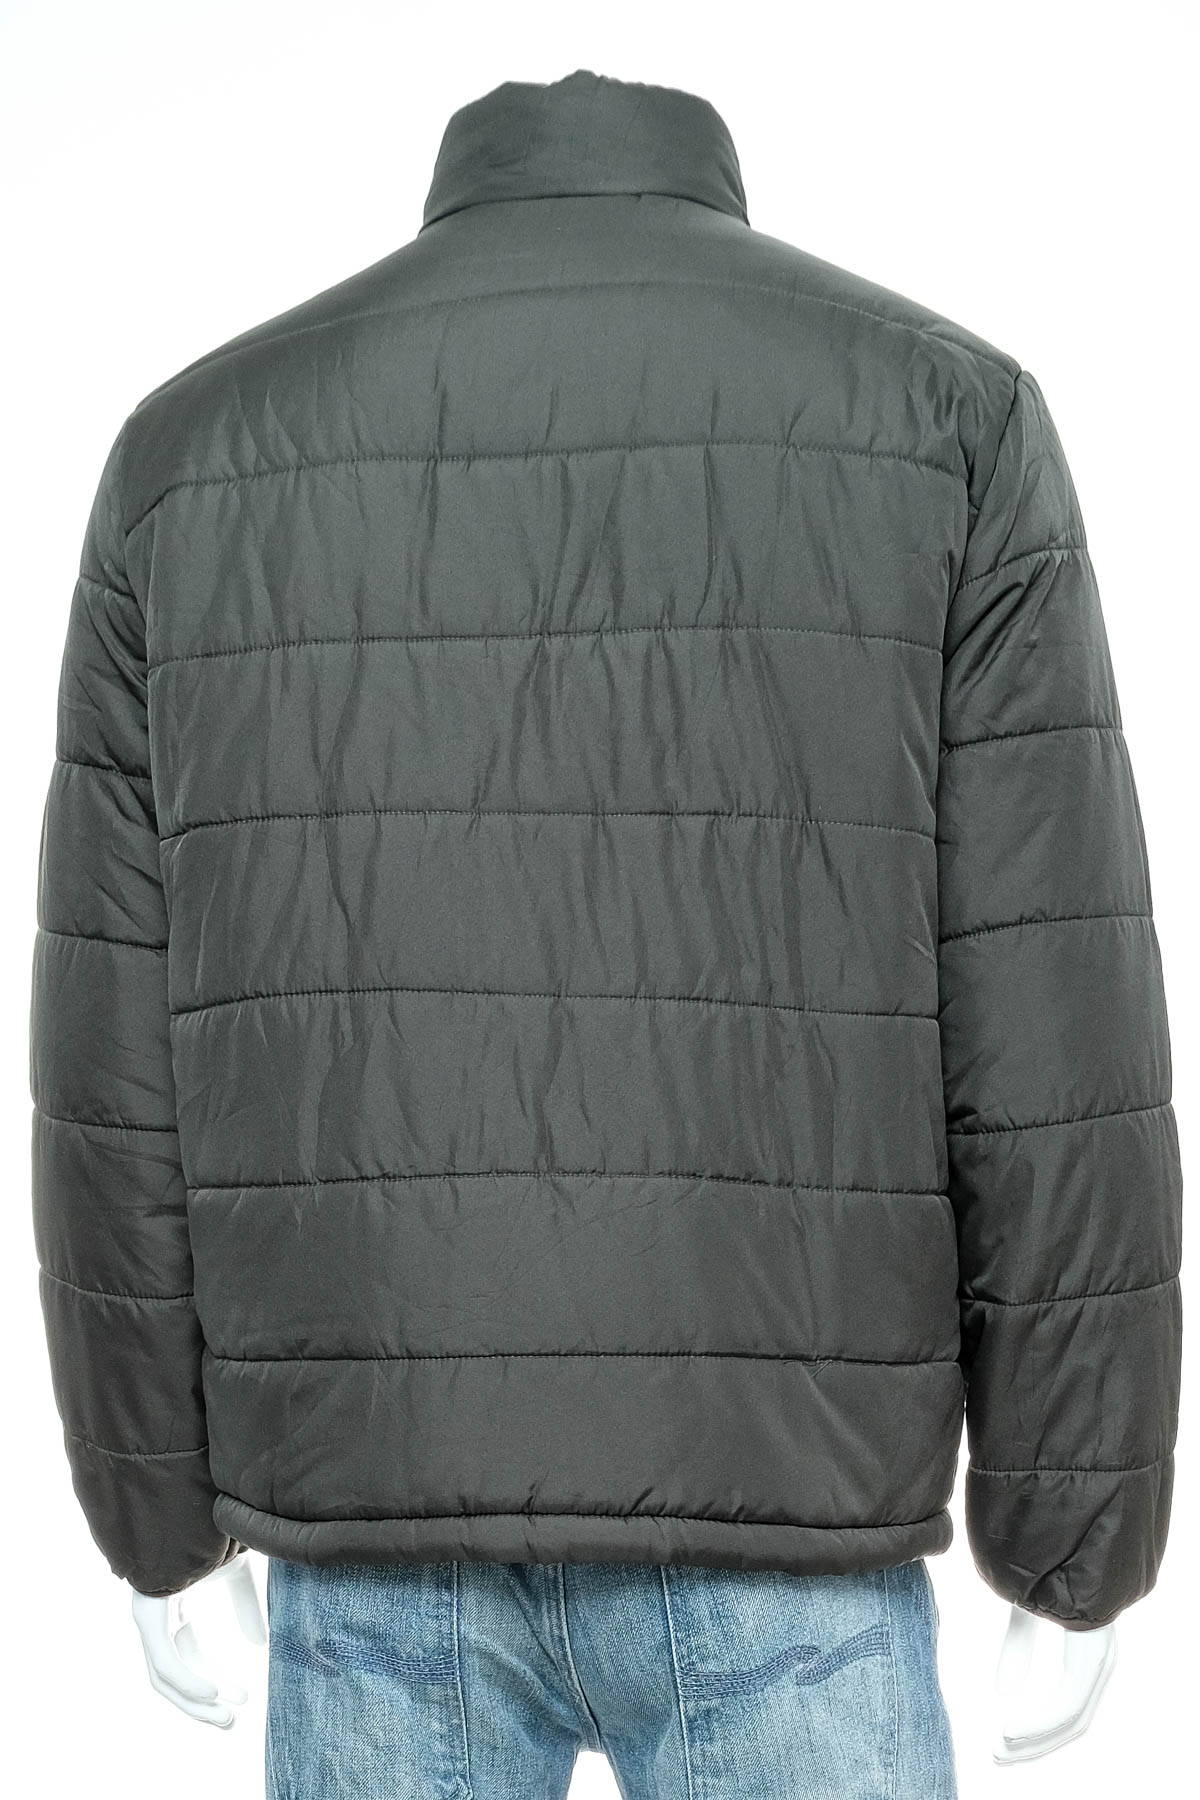 Men's jacket - OLD NAVY - 1